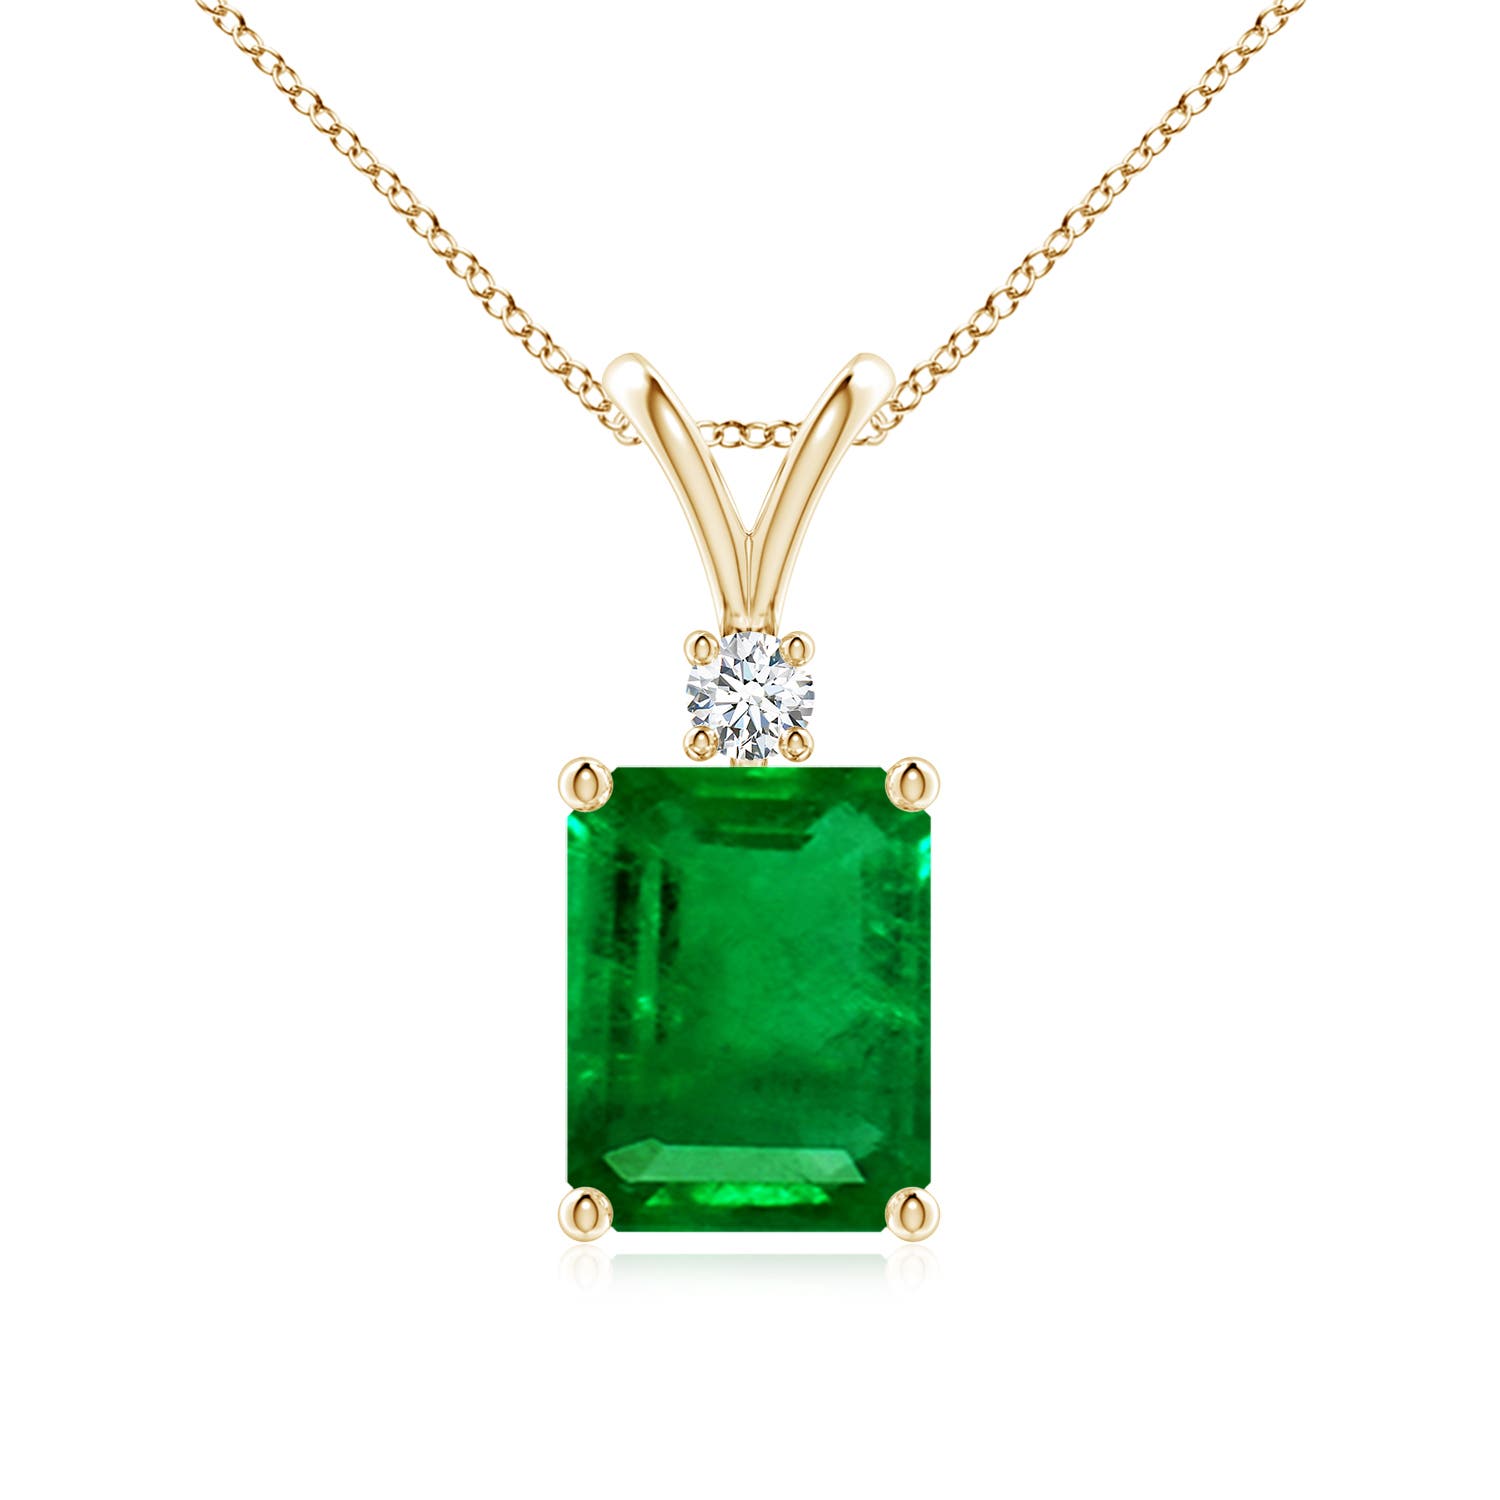 AAAA - Emerald / 2.32 CT / 14 KT Yellow Gold